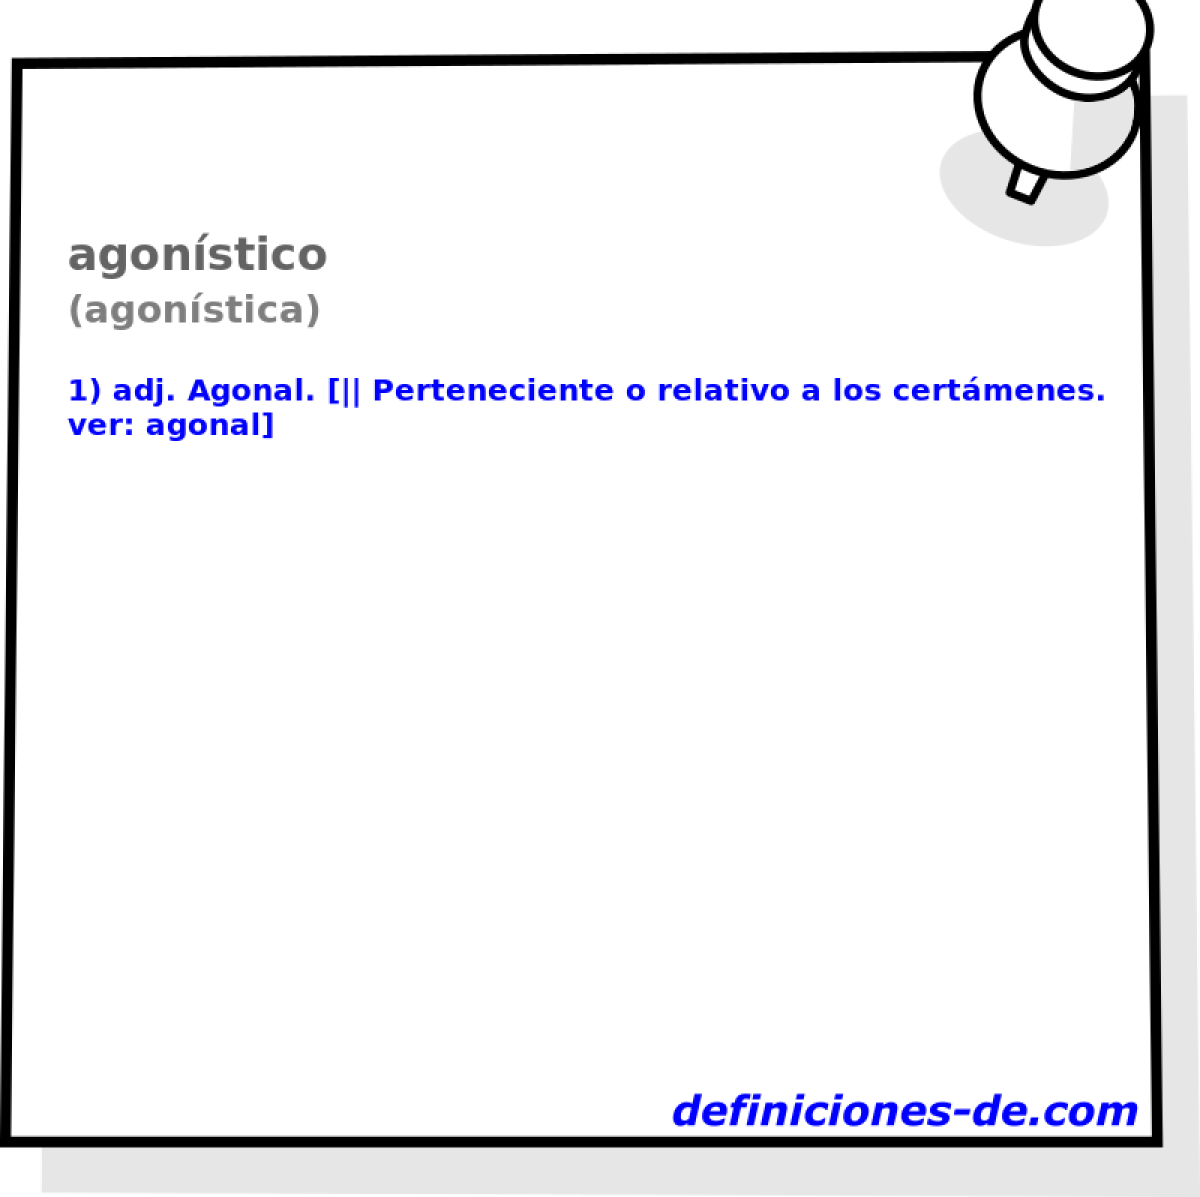 agonstico (agonstica)